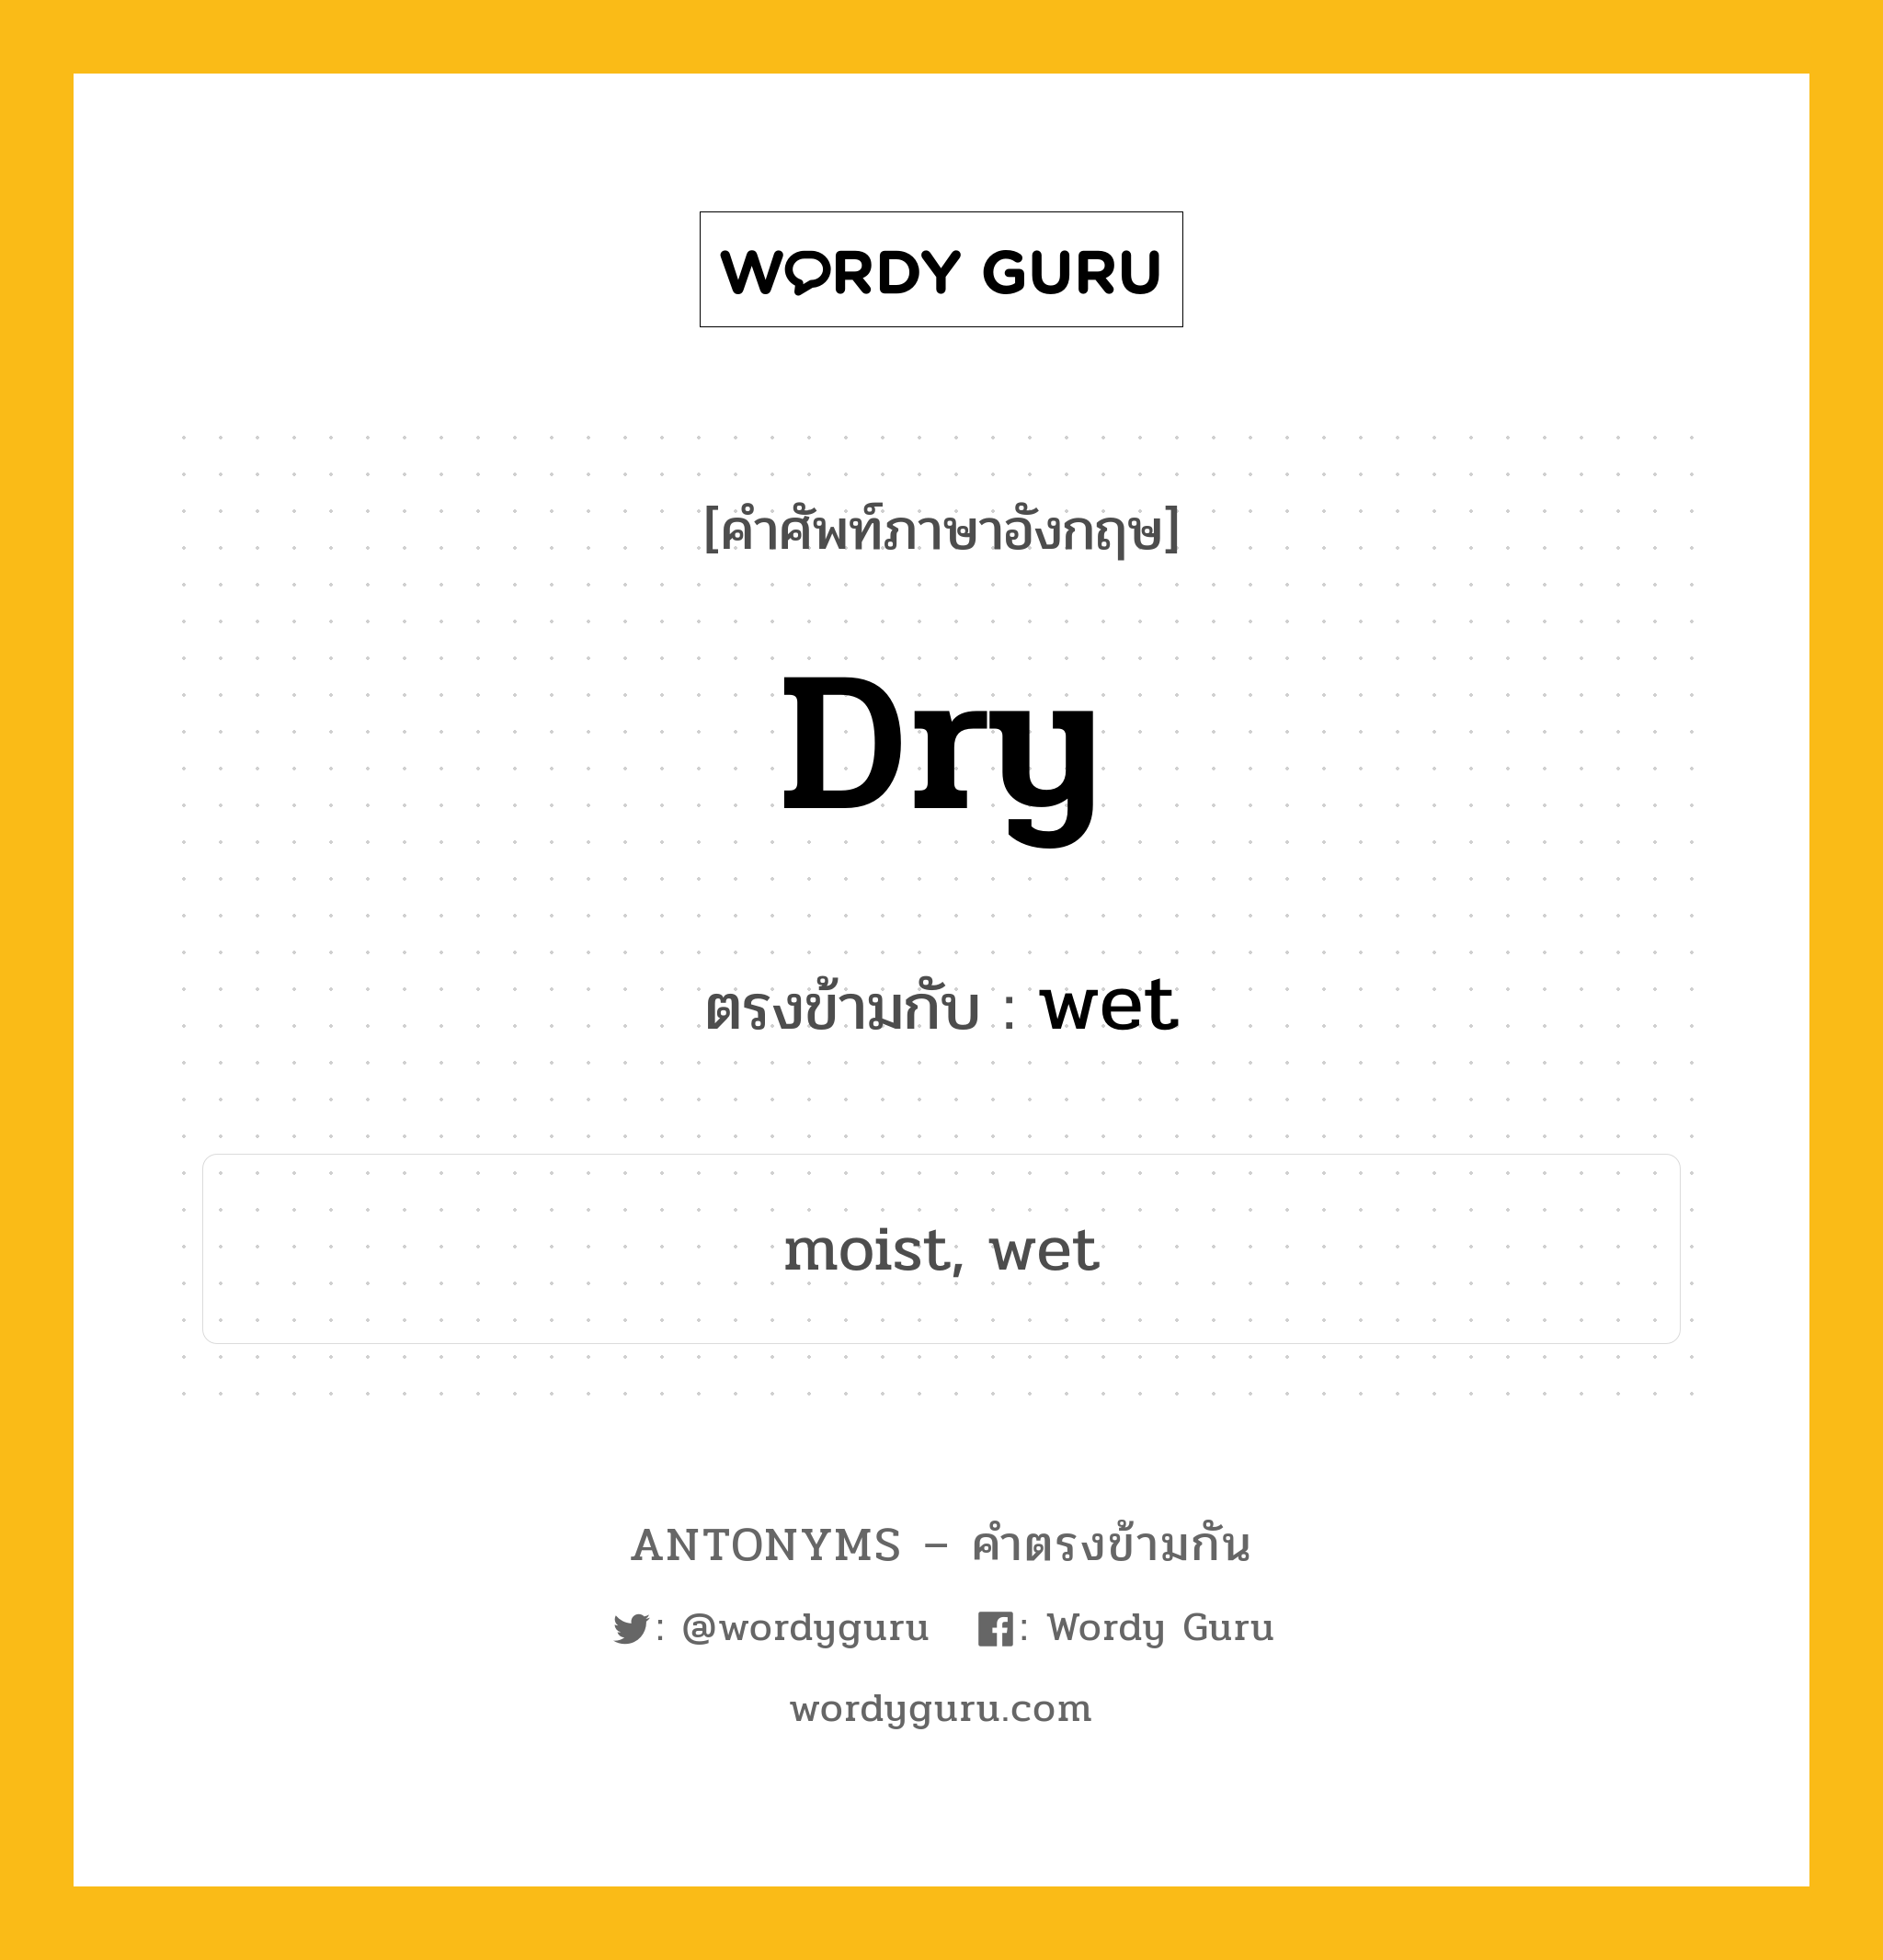 dry เป็นคำตรงข้ามกับคำไหนบ้าง?, คำศัพท์ภาษาอังกฤษ dry ตรงข้ามกับ wet หมวด wet